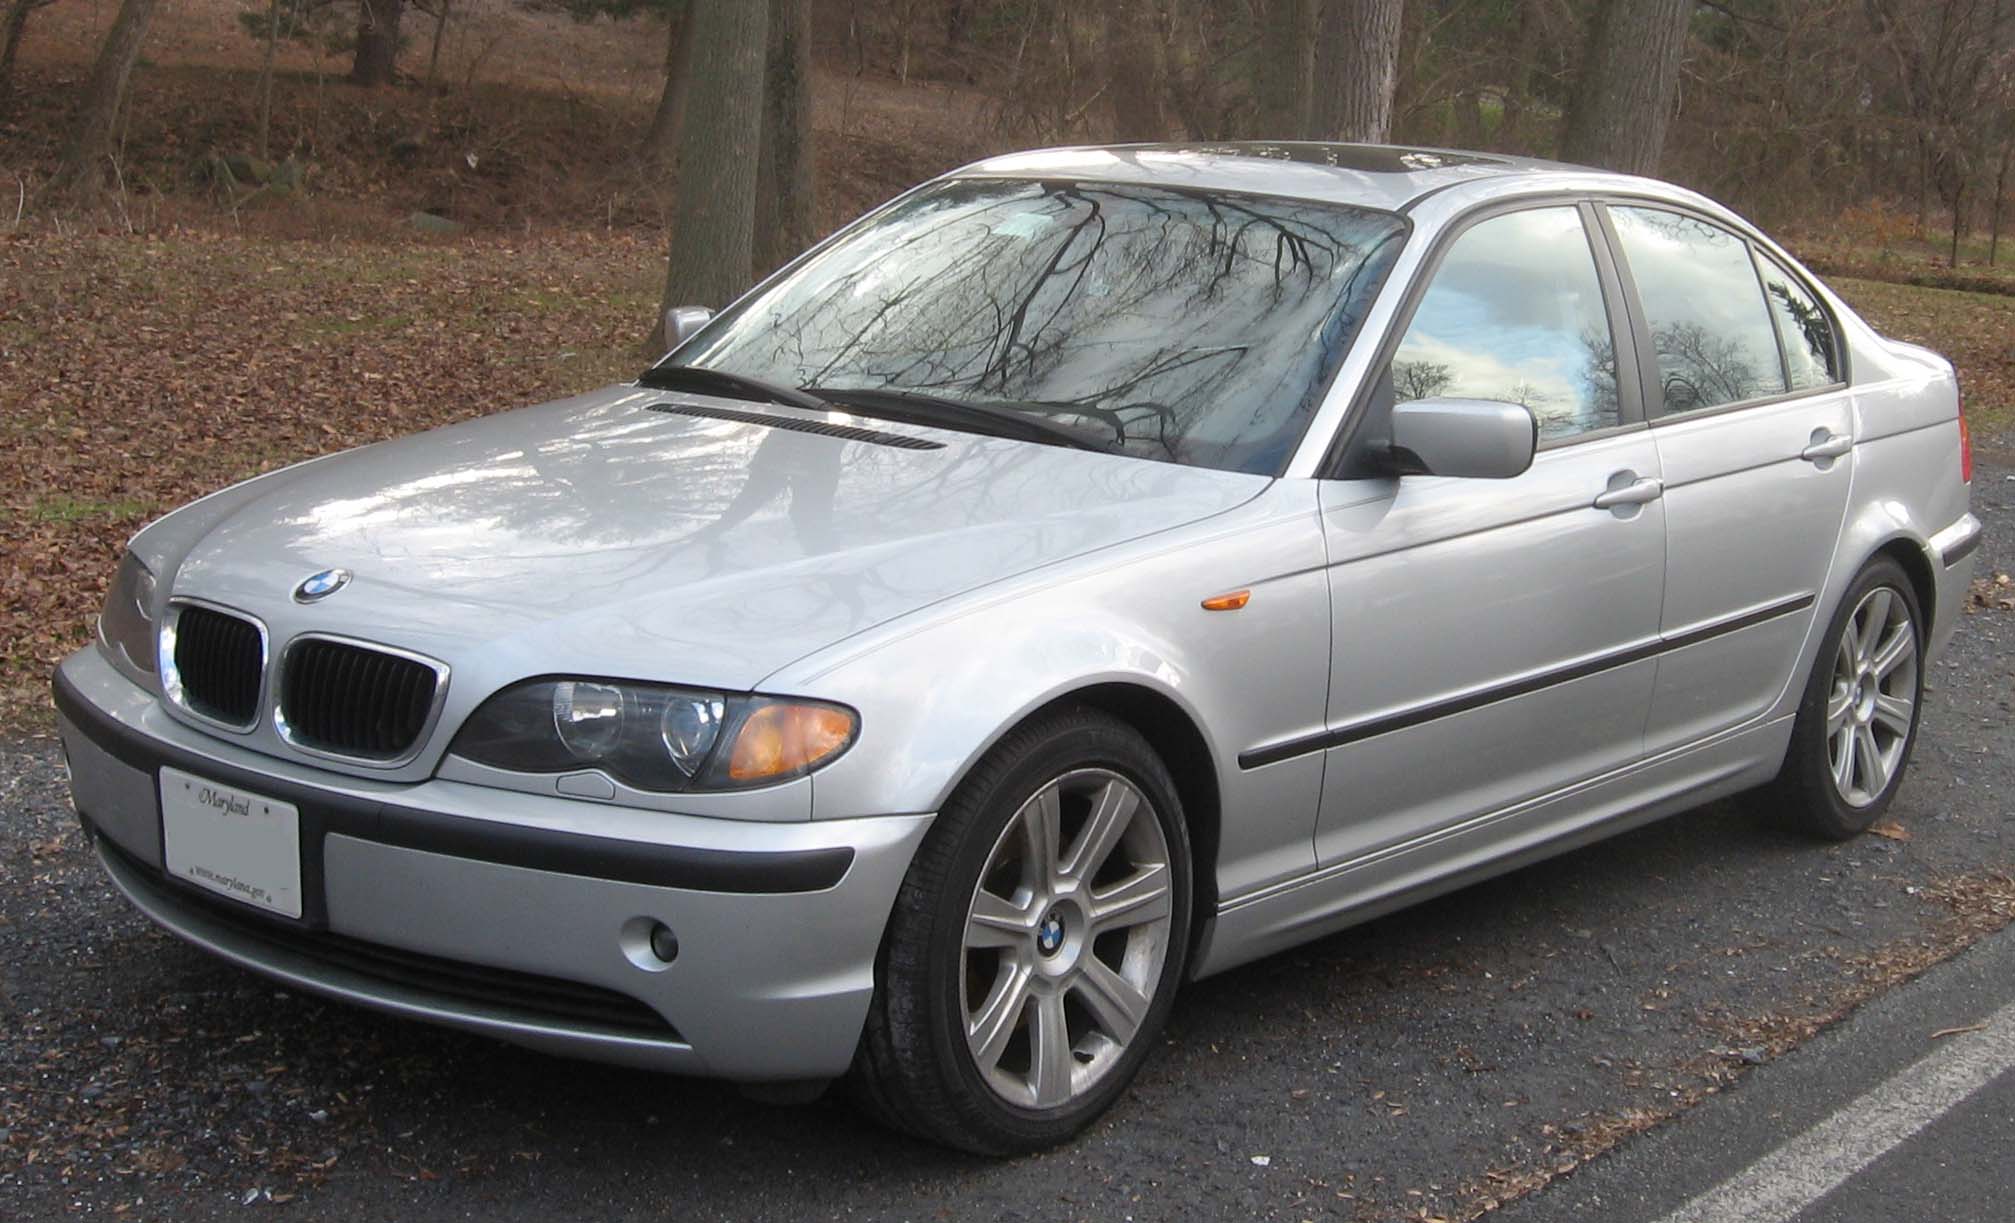 File:02-05 BMW 325i sedan.jpg - Wikimedia Commons